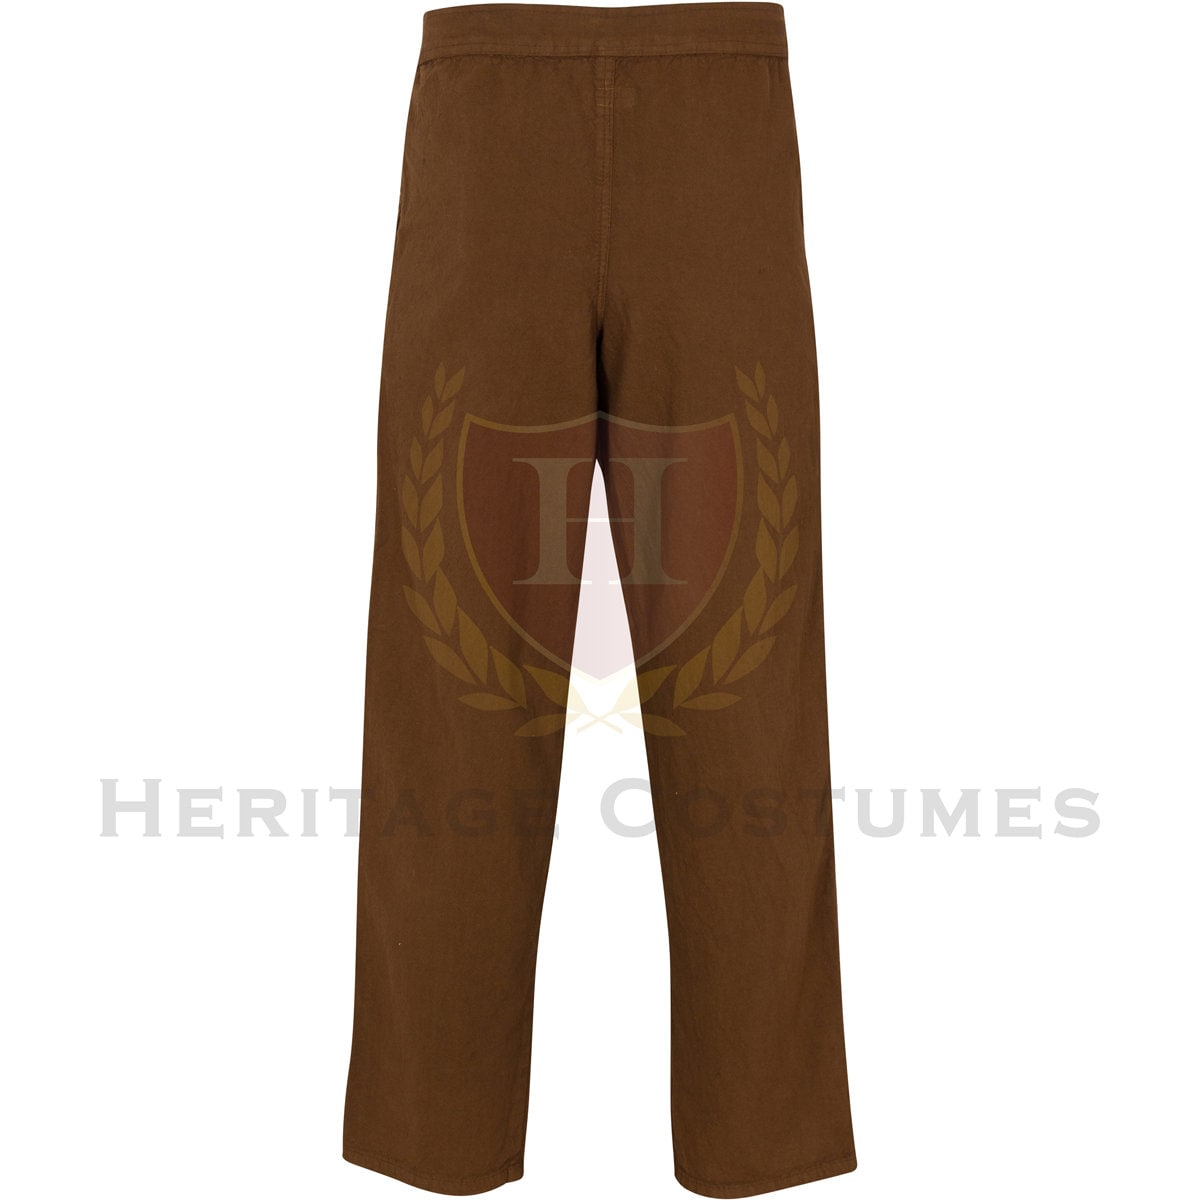 Men's Cotton Renaissance Pants/Medieval Trousers